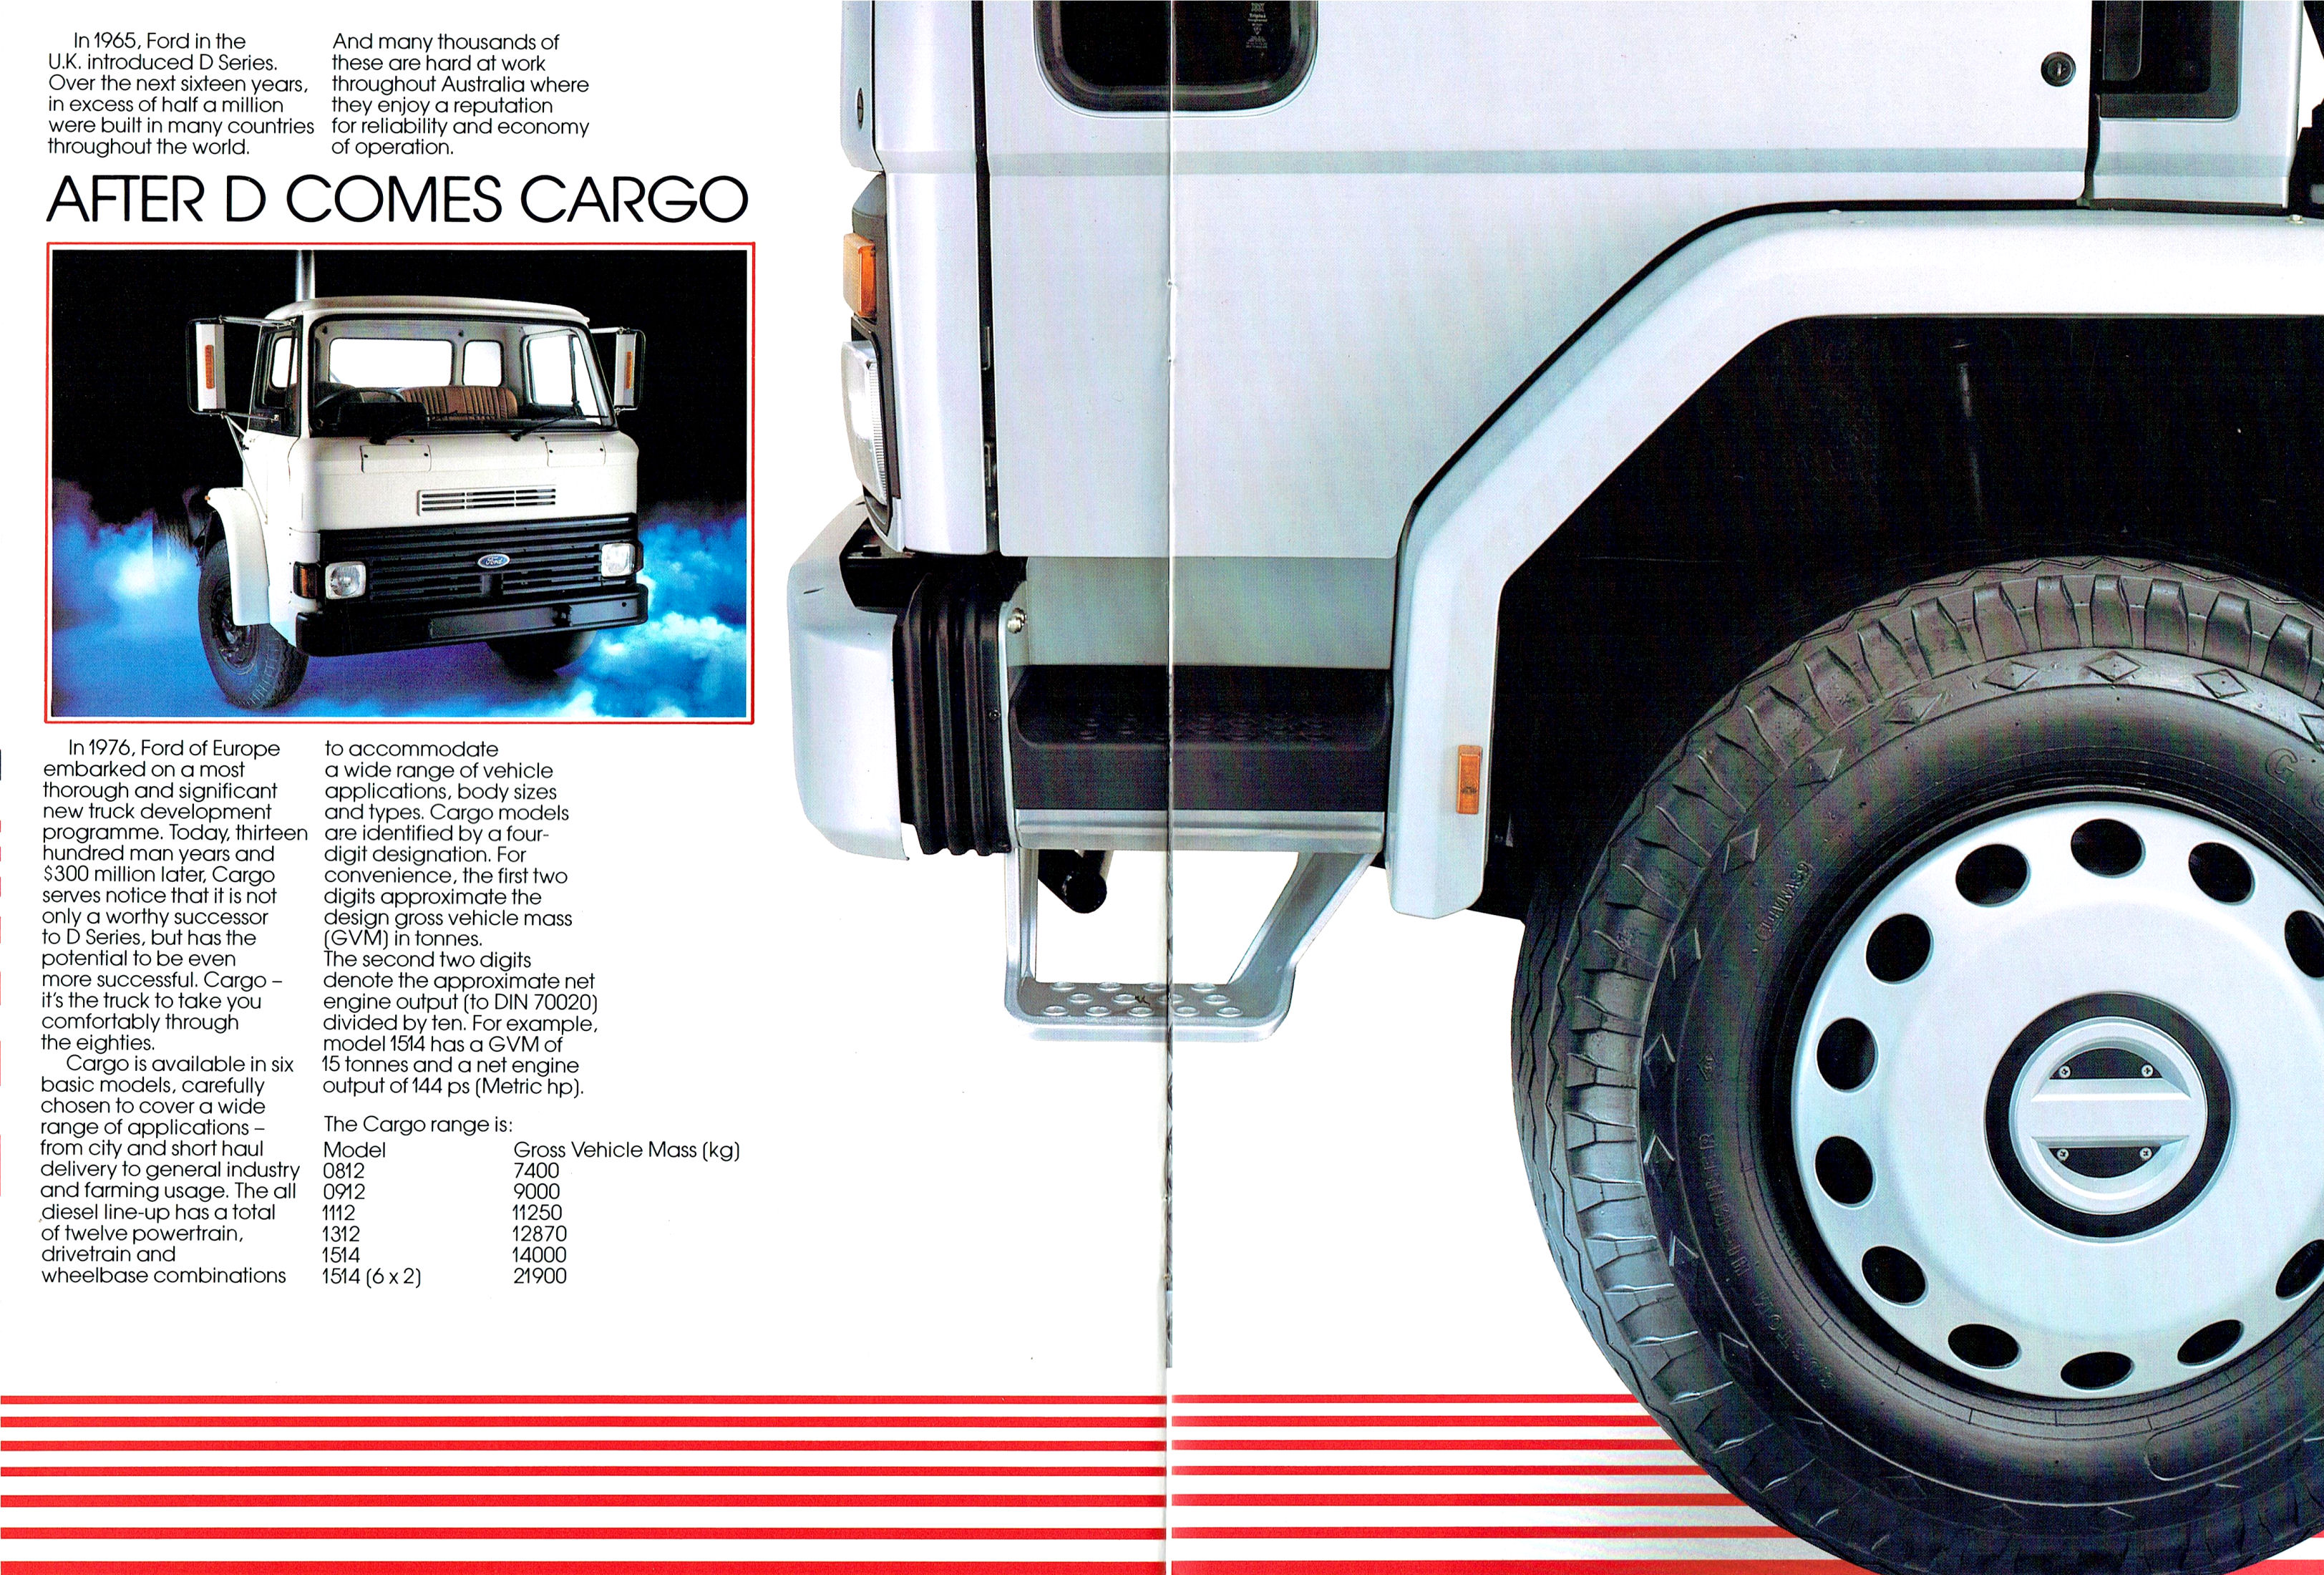 1981 Ford Cargo Trucks (Aus)-04-05.jpg-2022-12-7 13.40.47